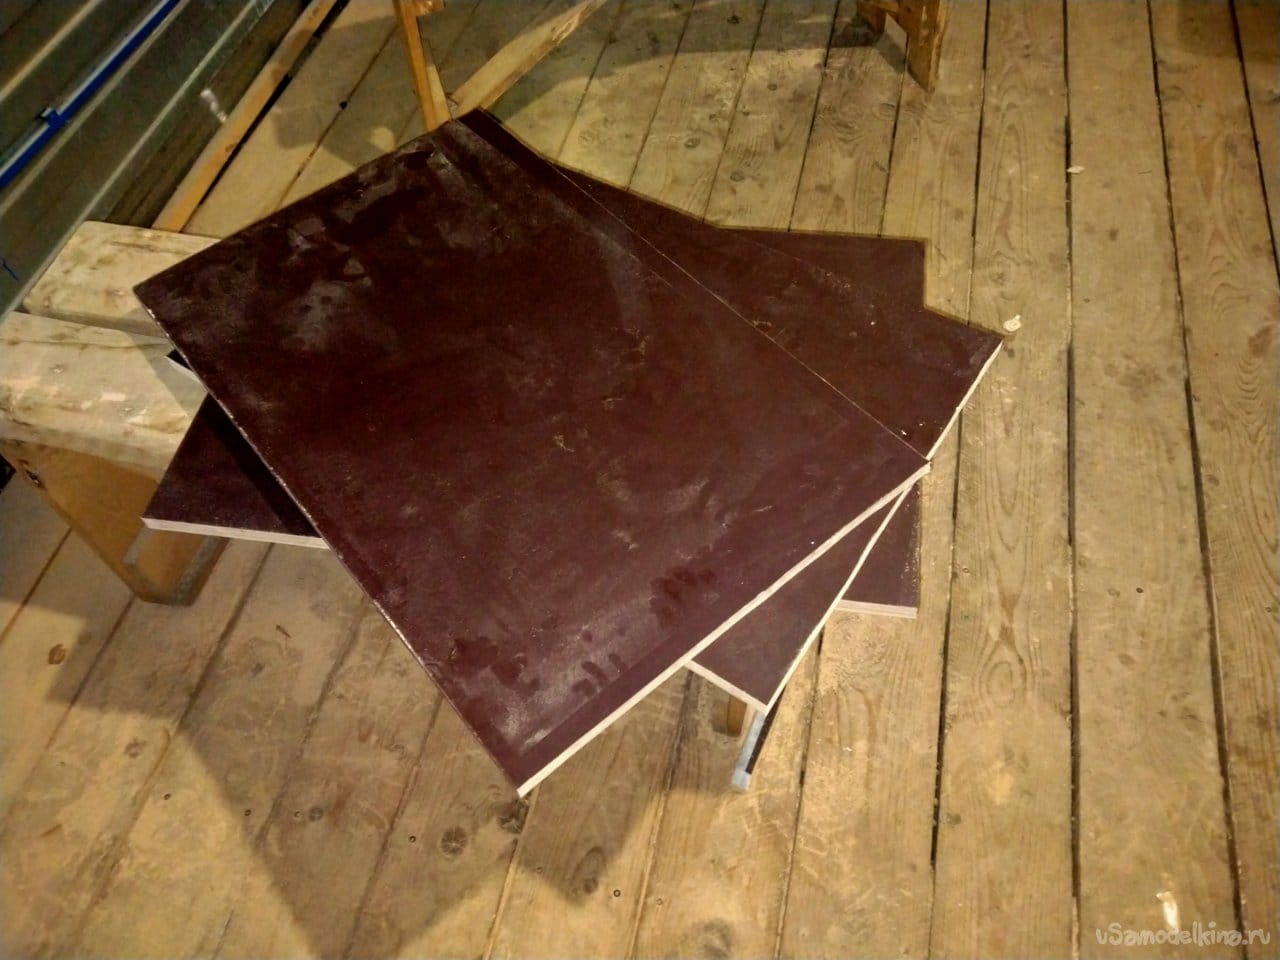 Ламинированный стол со встроенным комодом